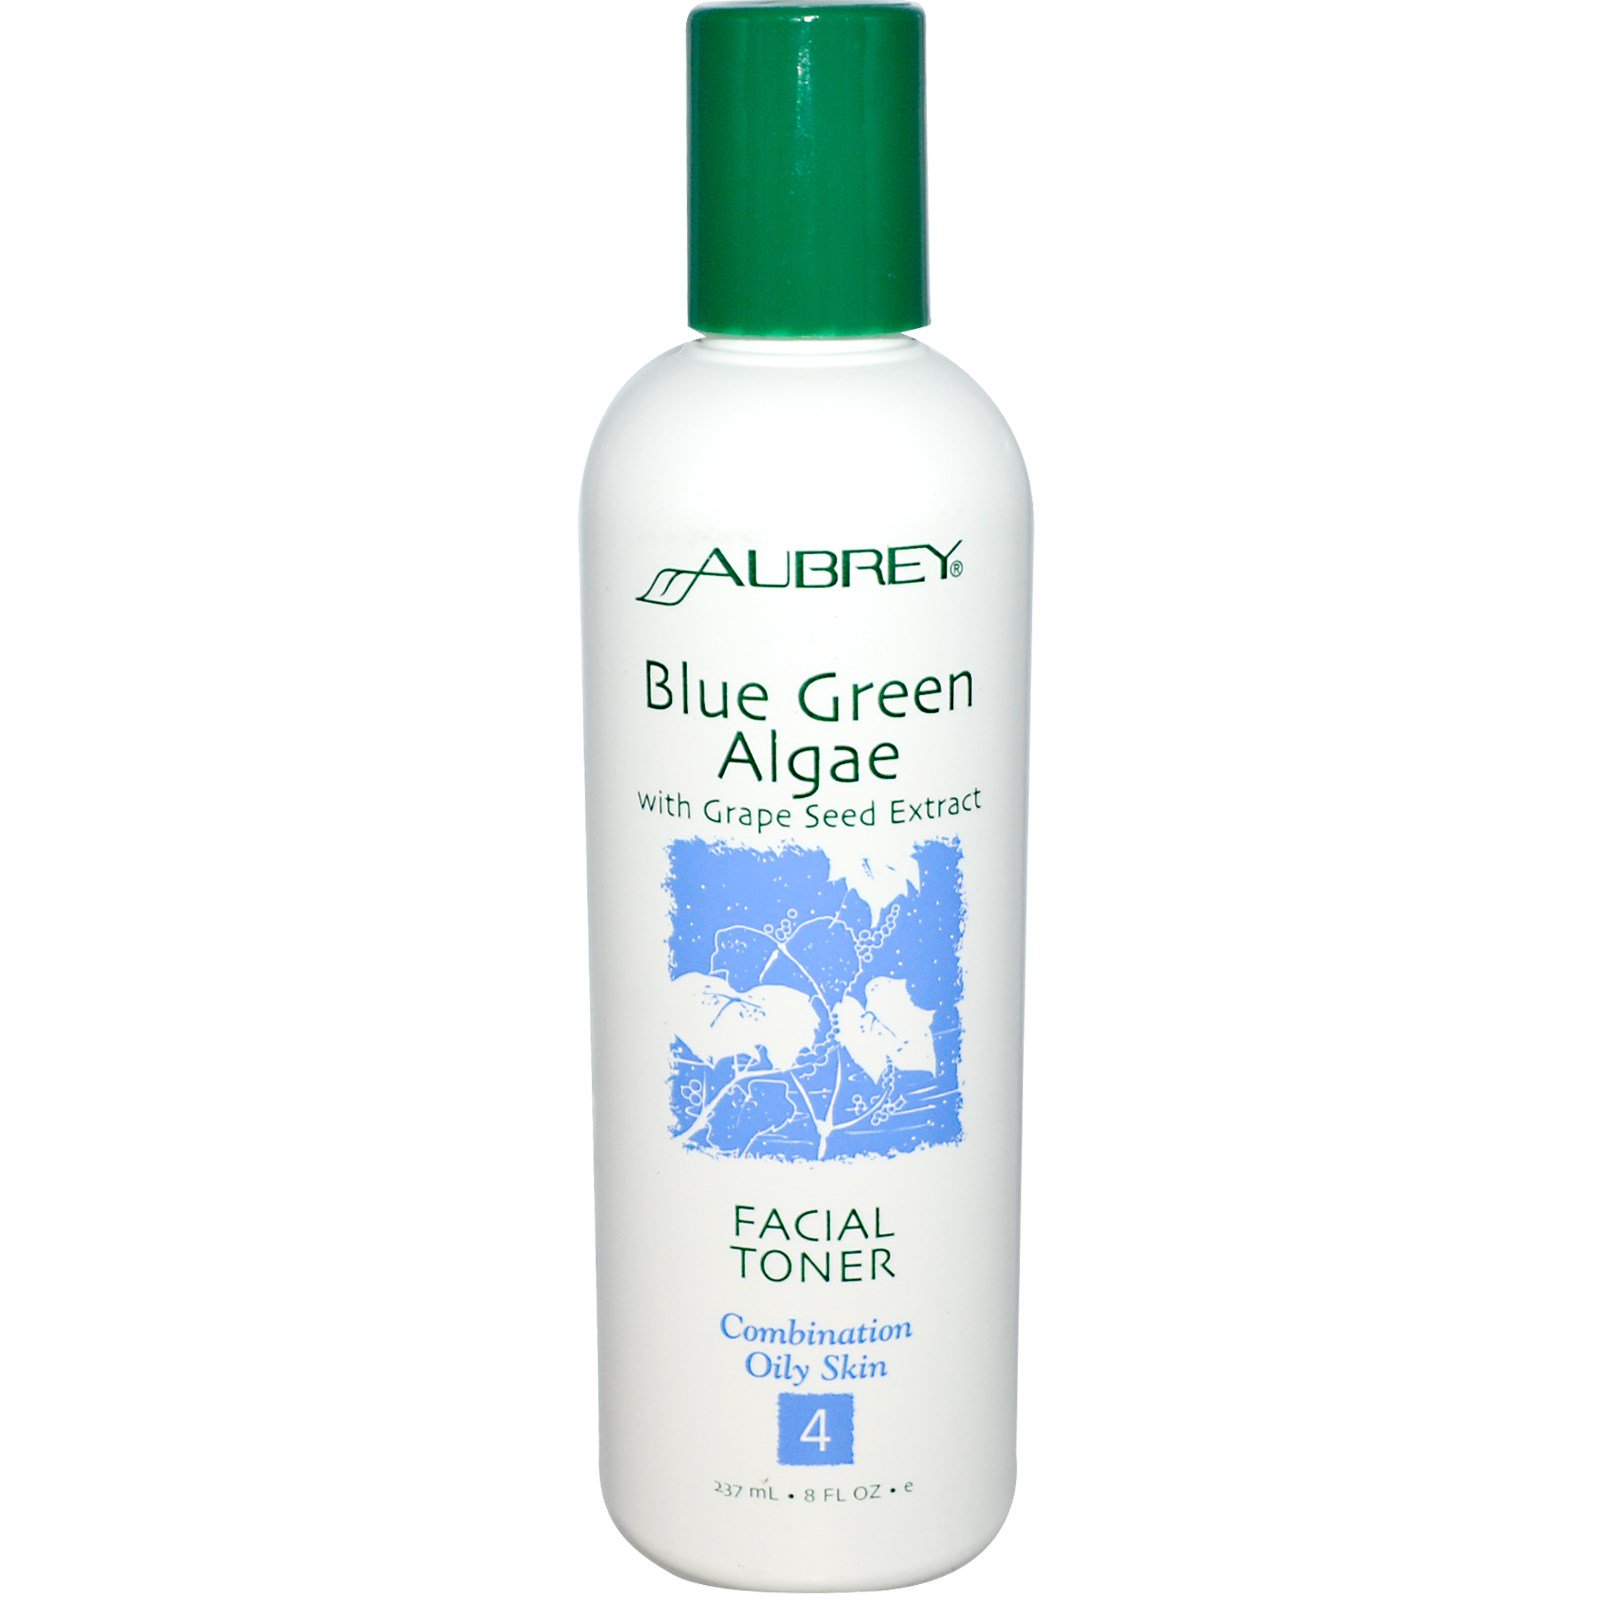 Aubrey organics blue green algae facial cleansing lotion